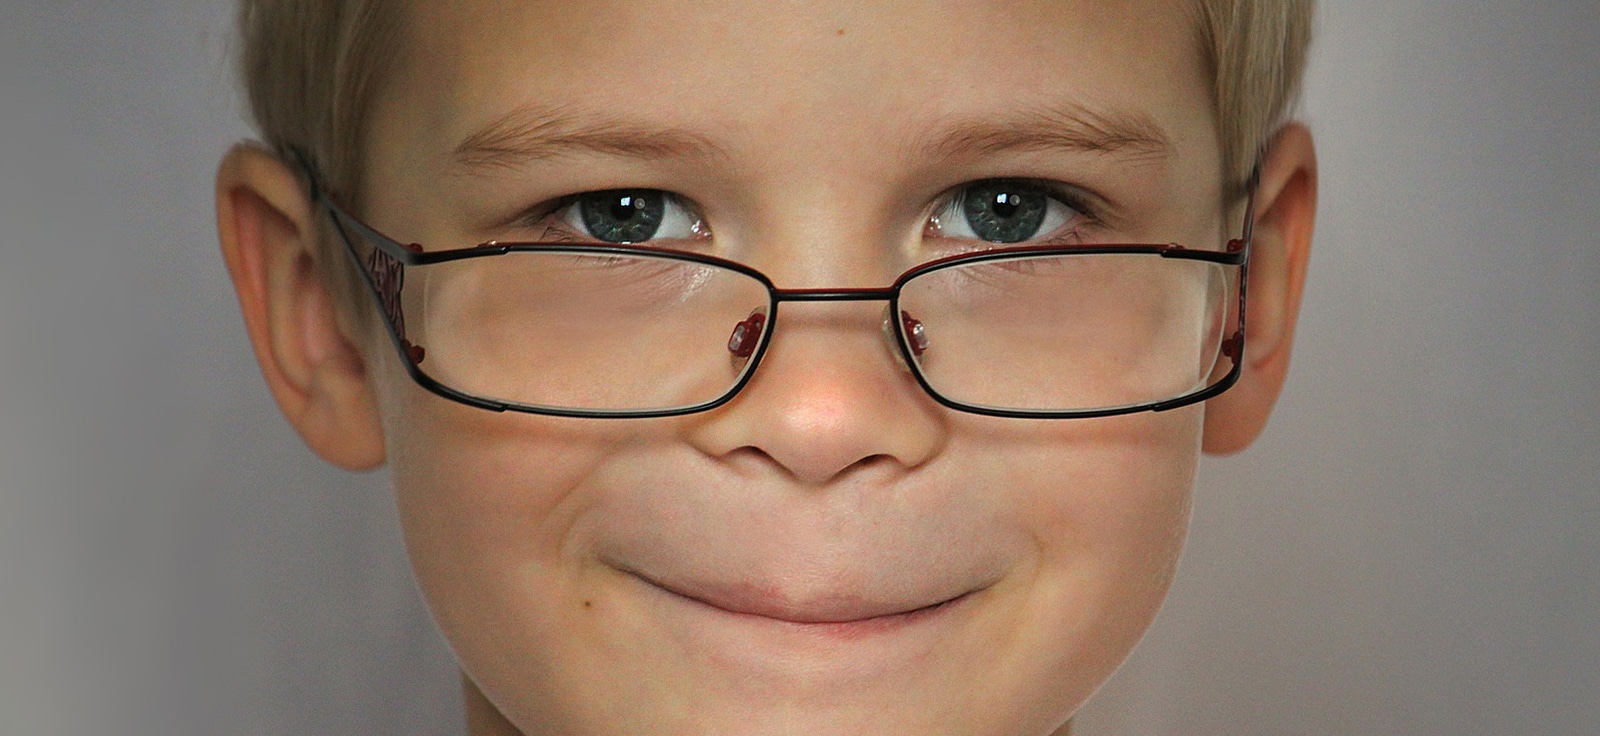 Ortho-K for children (Orthokeratology) freedom from glasses